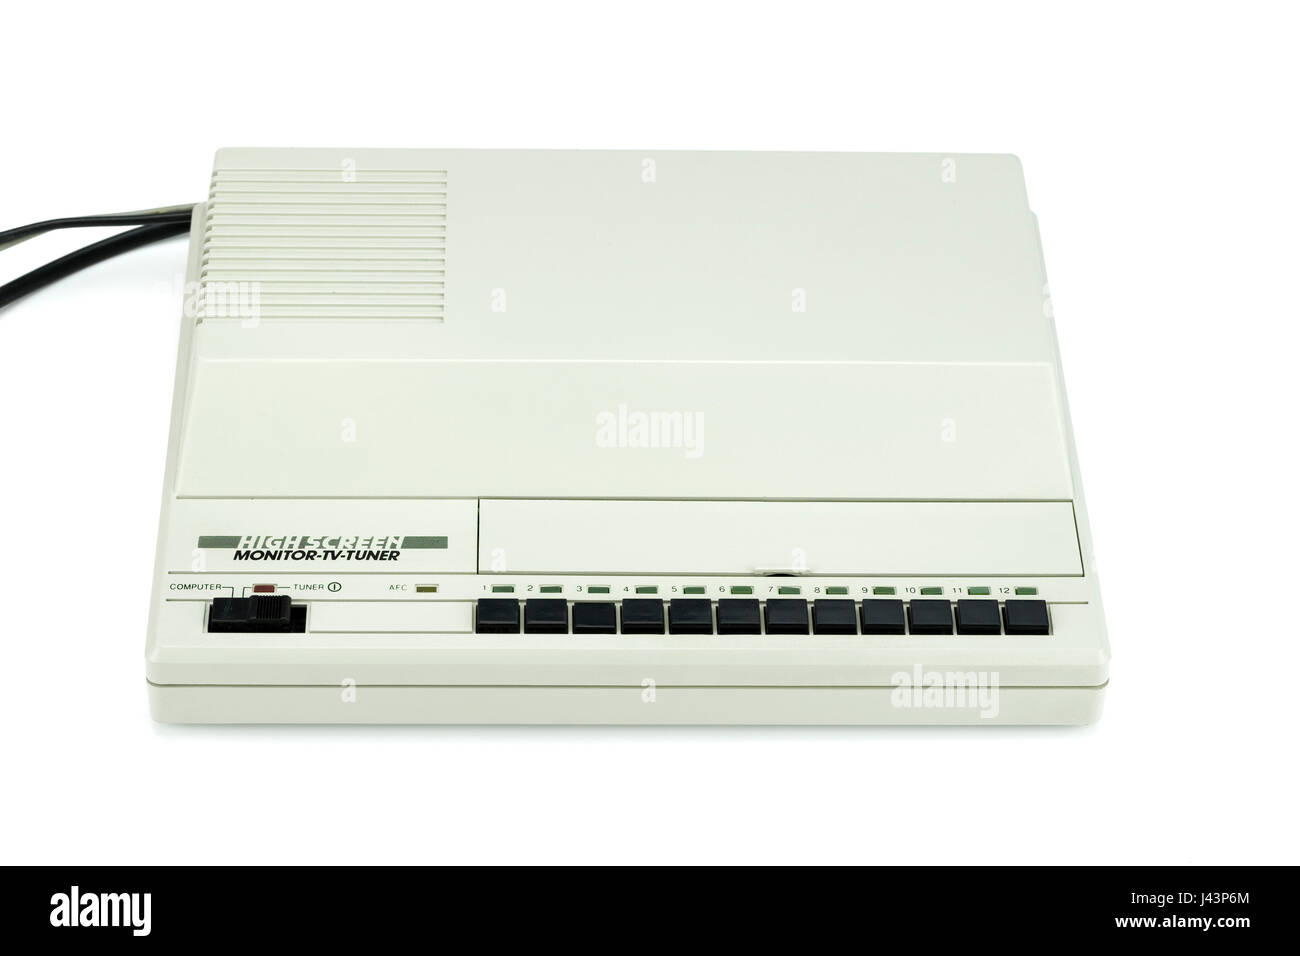 Philips AV 7300 TV Tuner Highscreen branded. Stock Photo